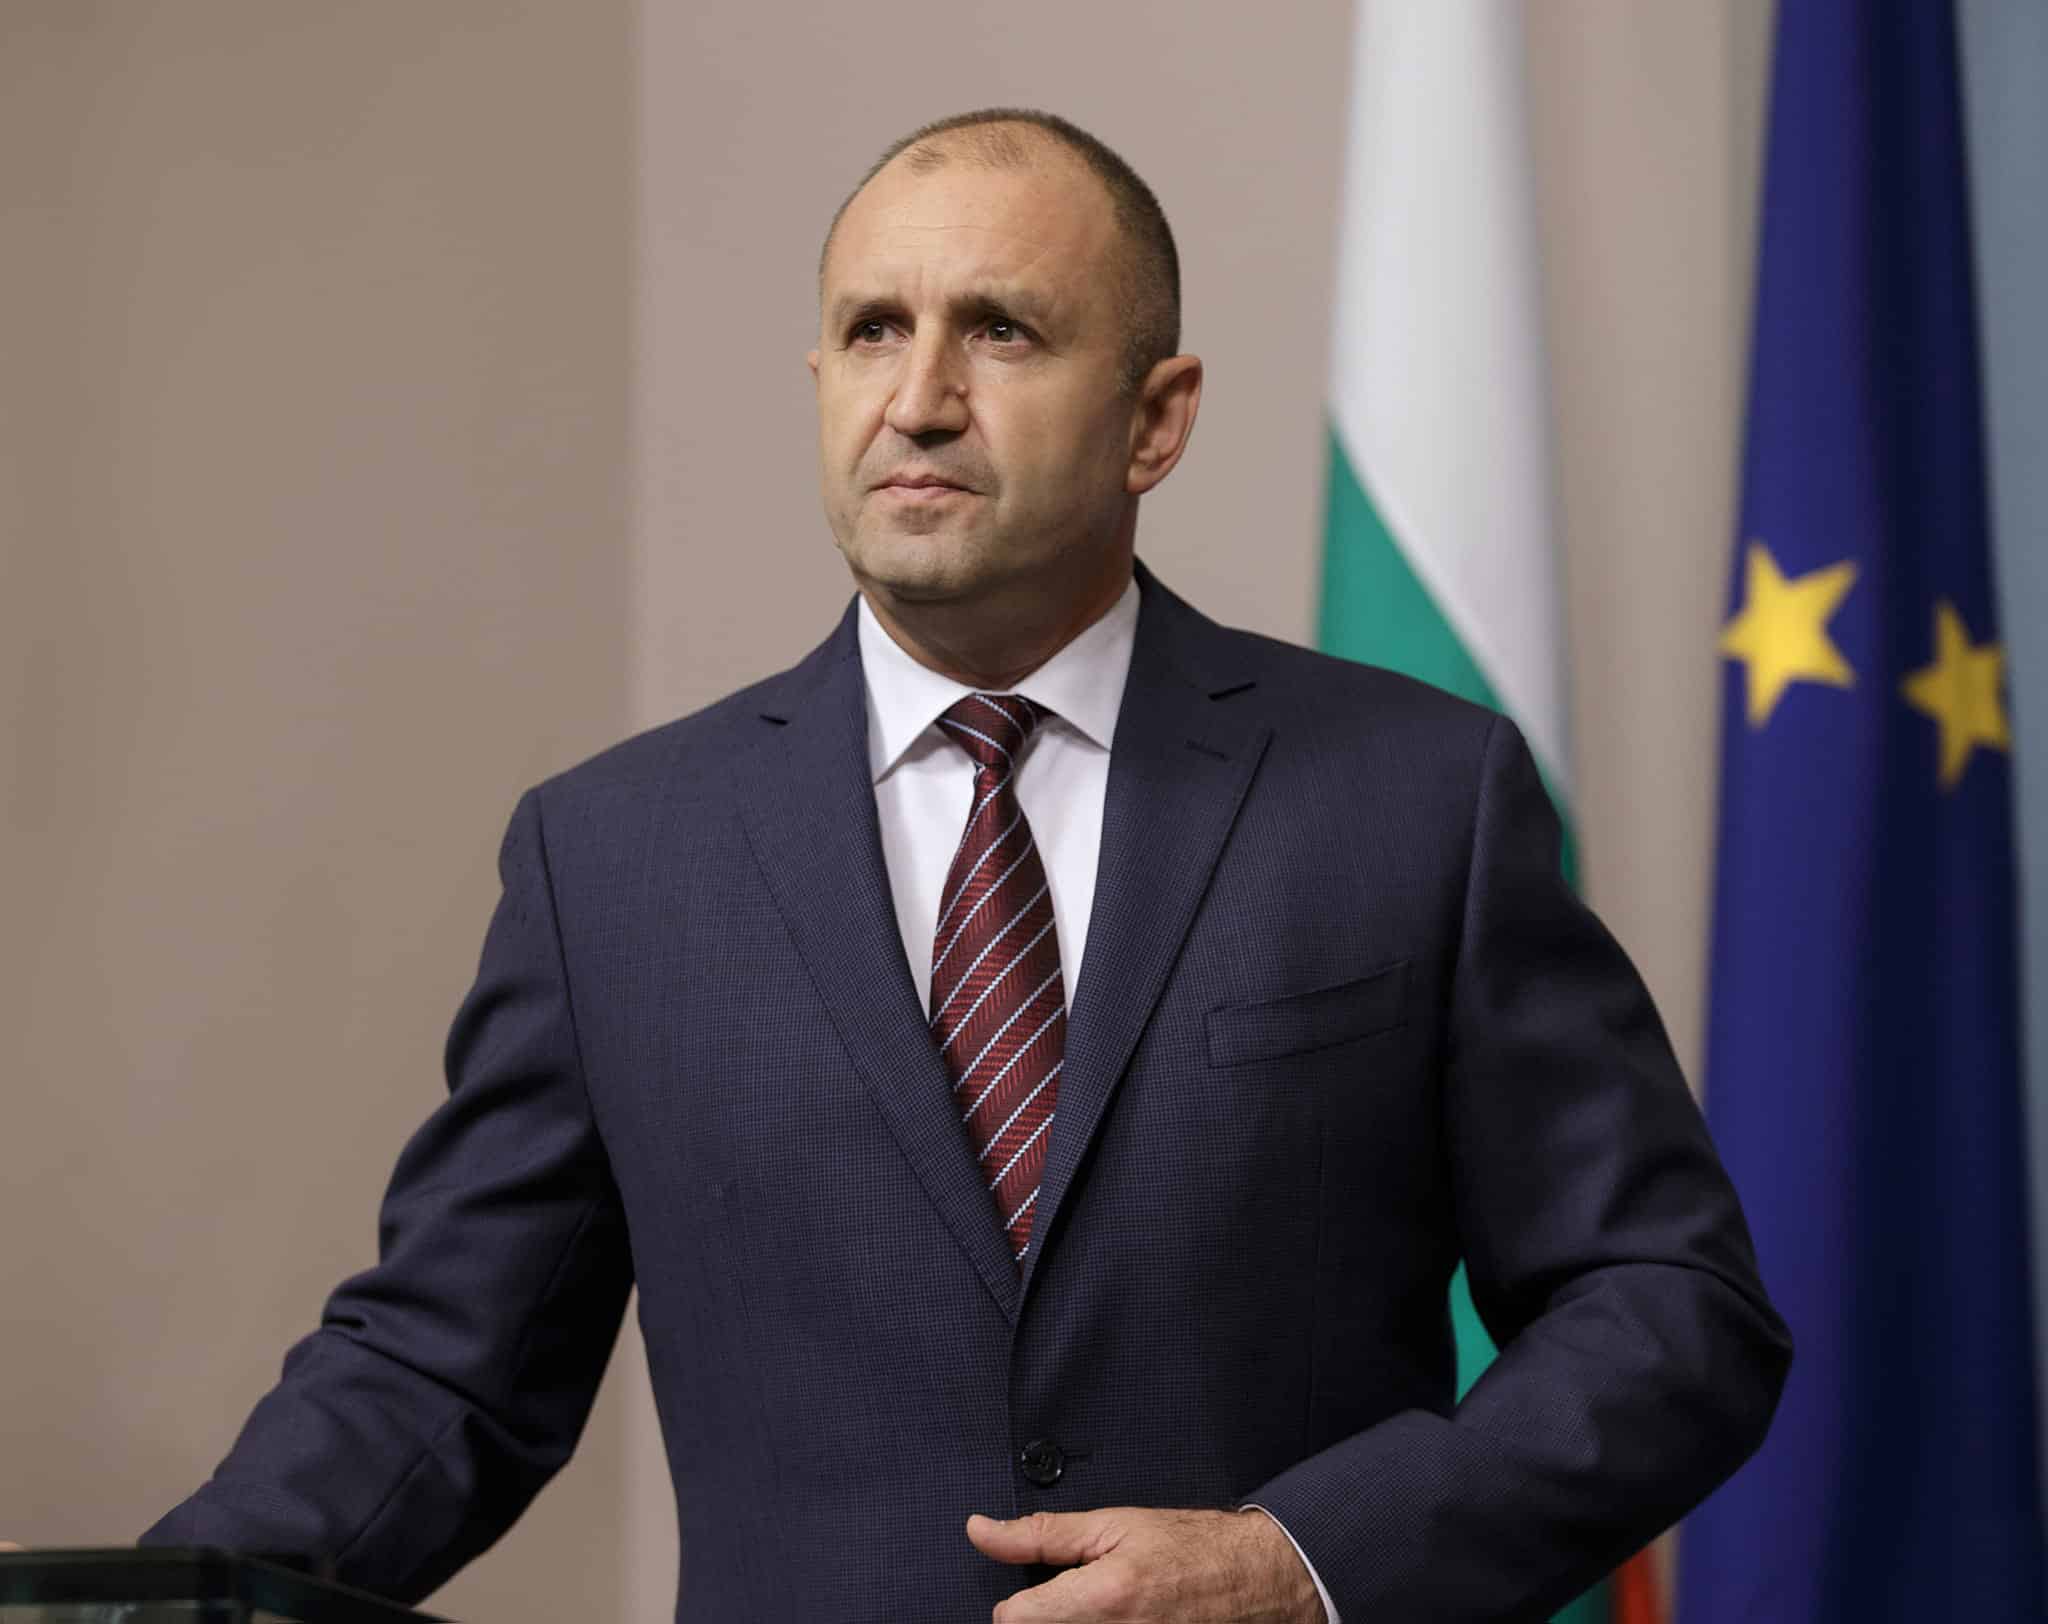 Република България не приема изявления и поведение, които противоречат както